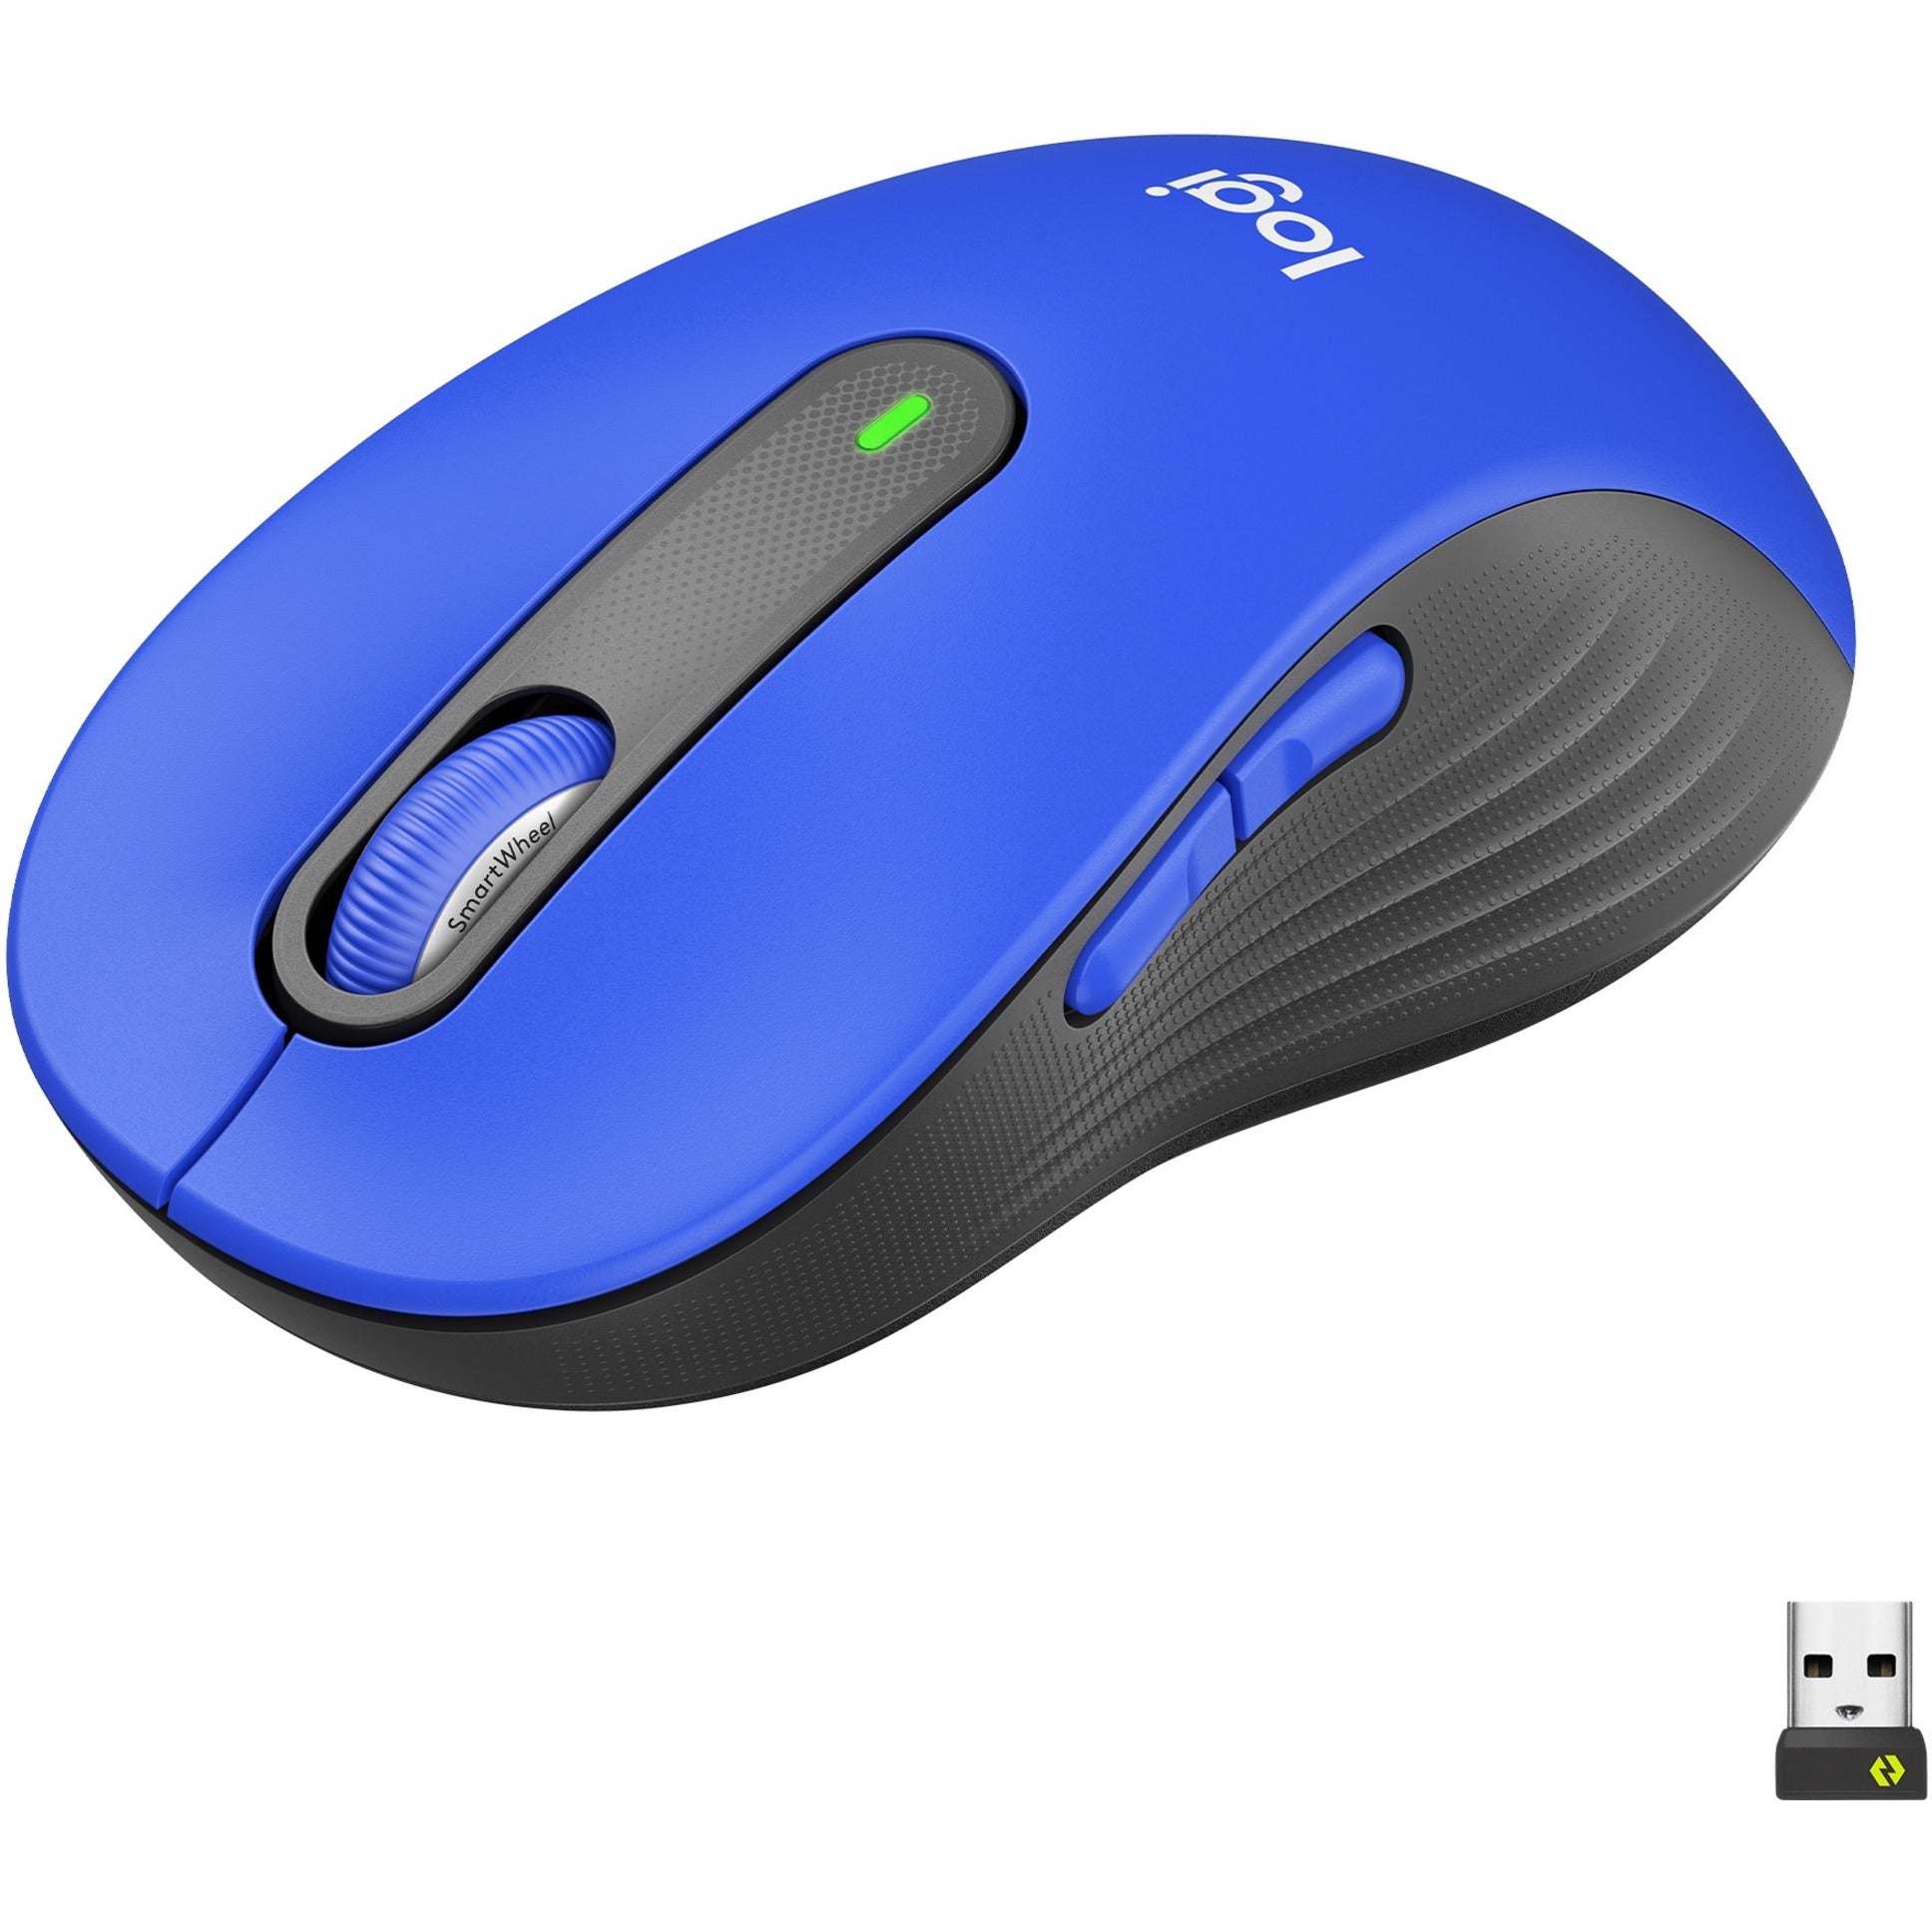 Logitech 910-006232 Signature M650 L (Blue) Wireless Mouse, Large Size, 2000 DPI, USB Receiver